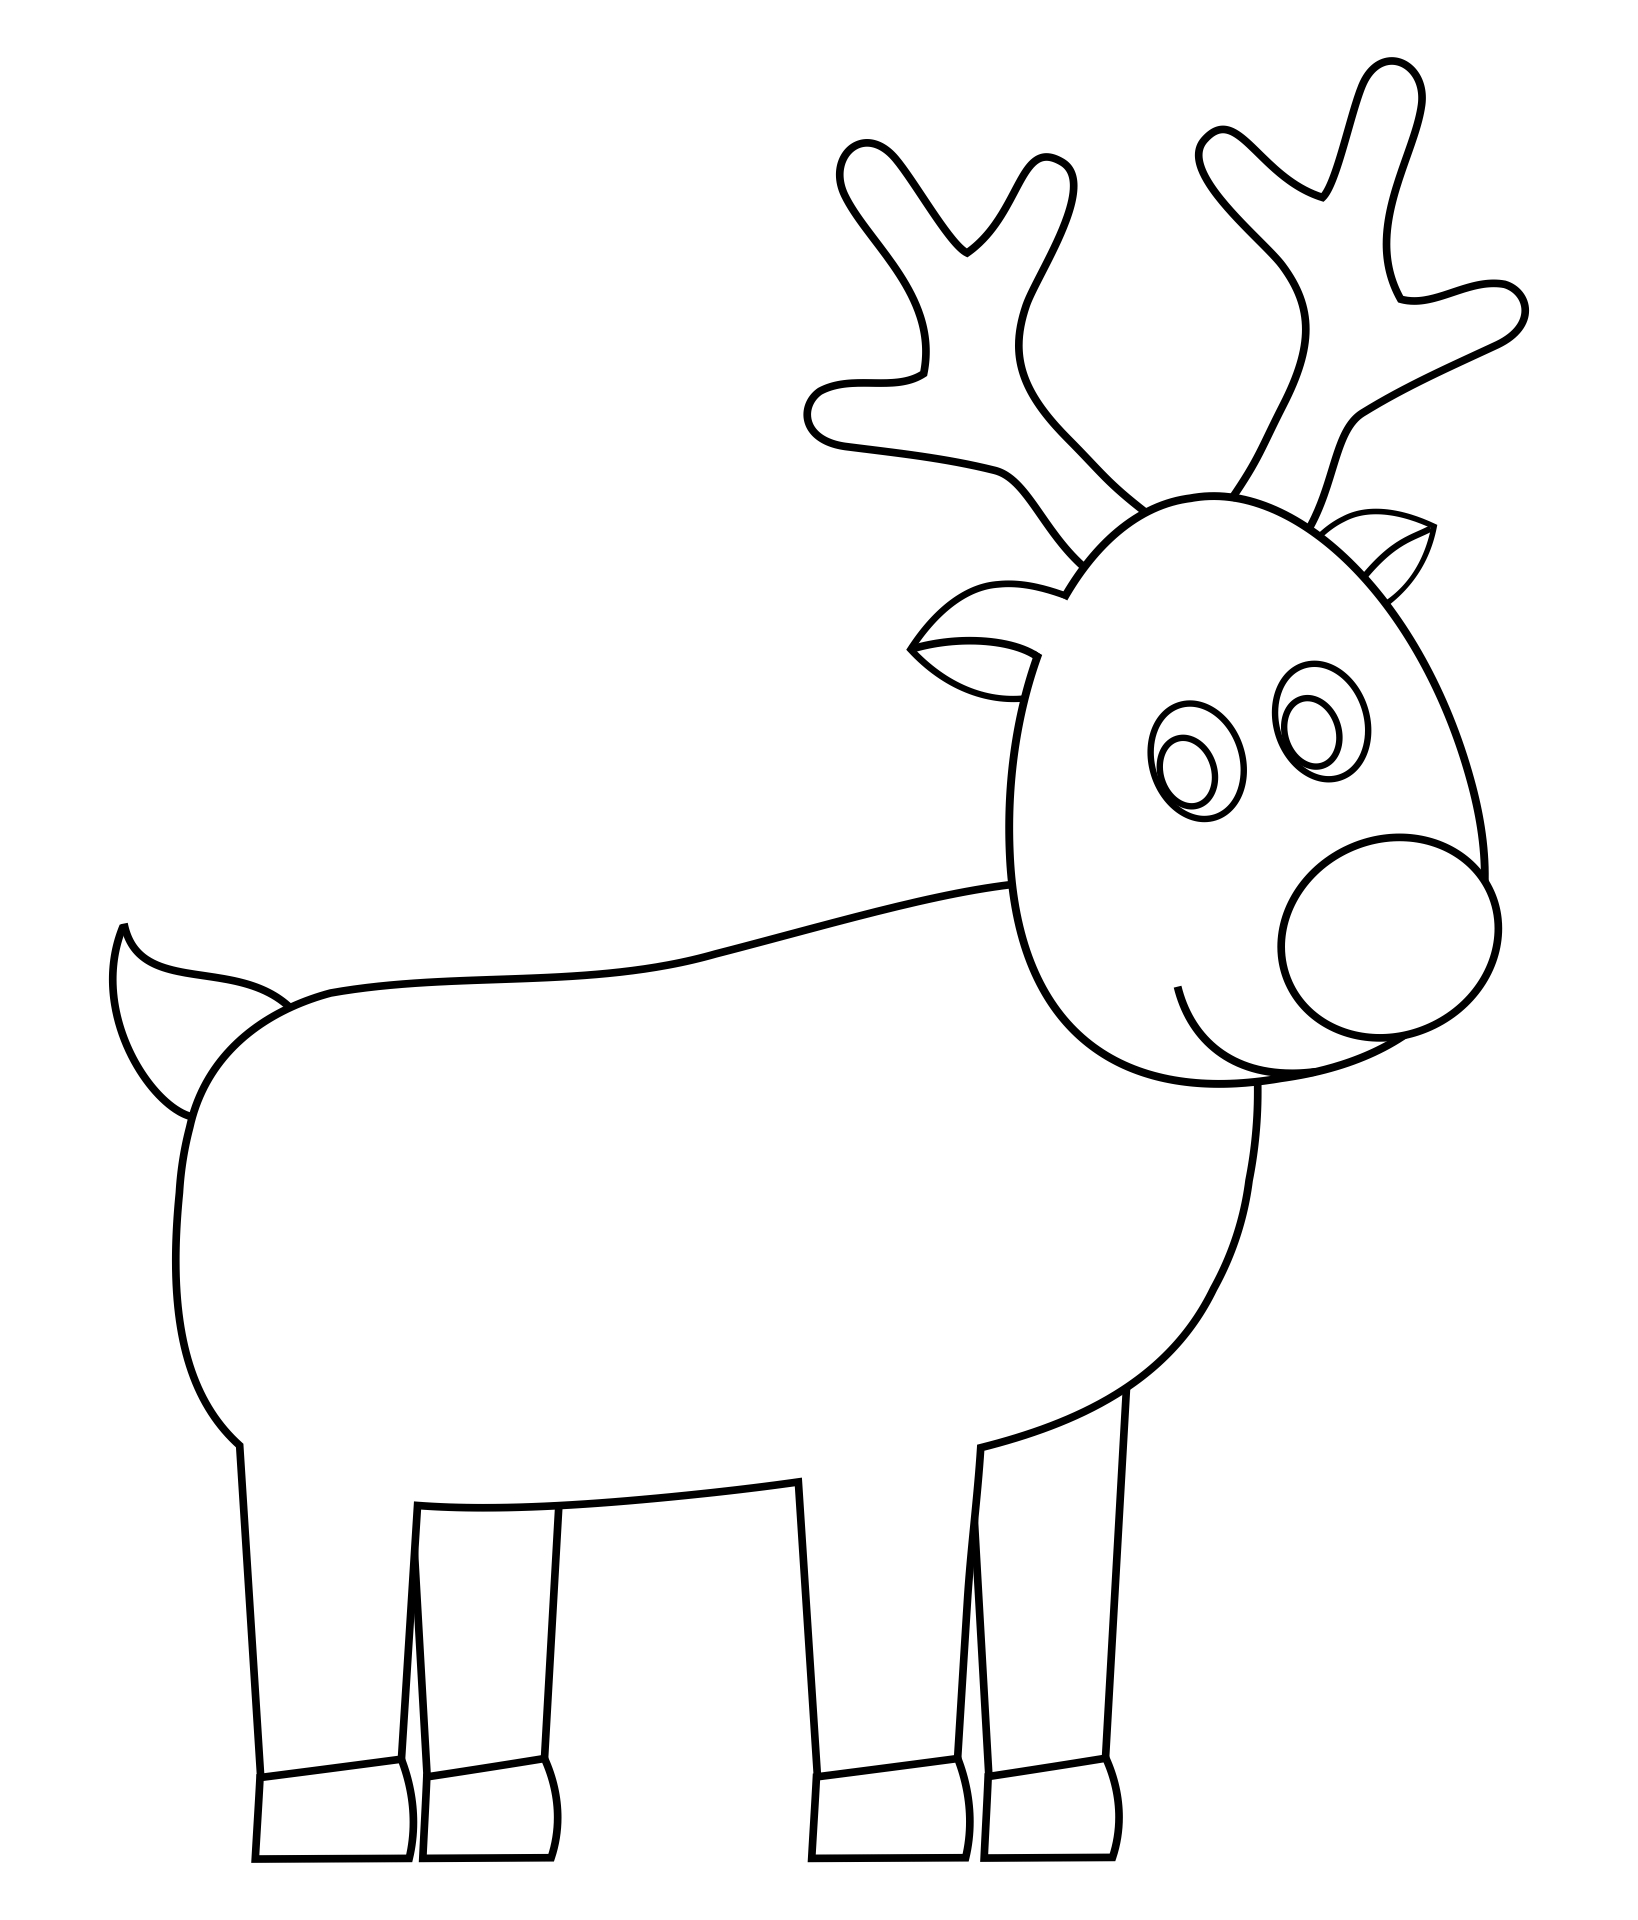 printable-reindeer-template